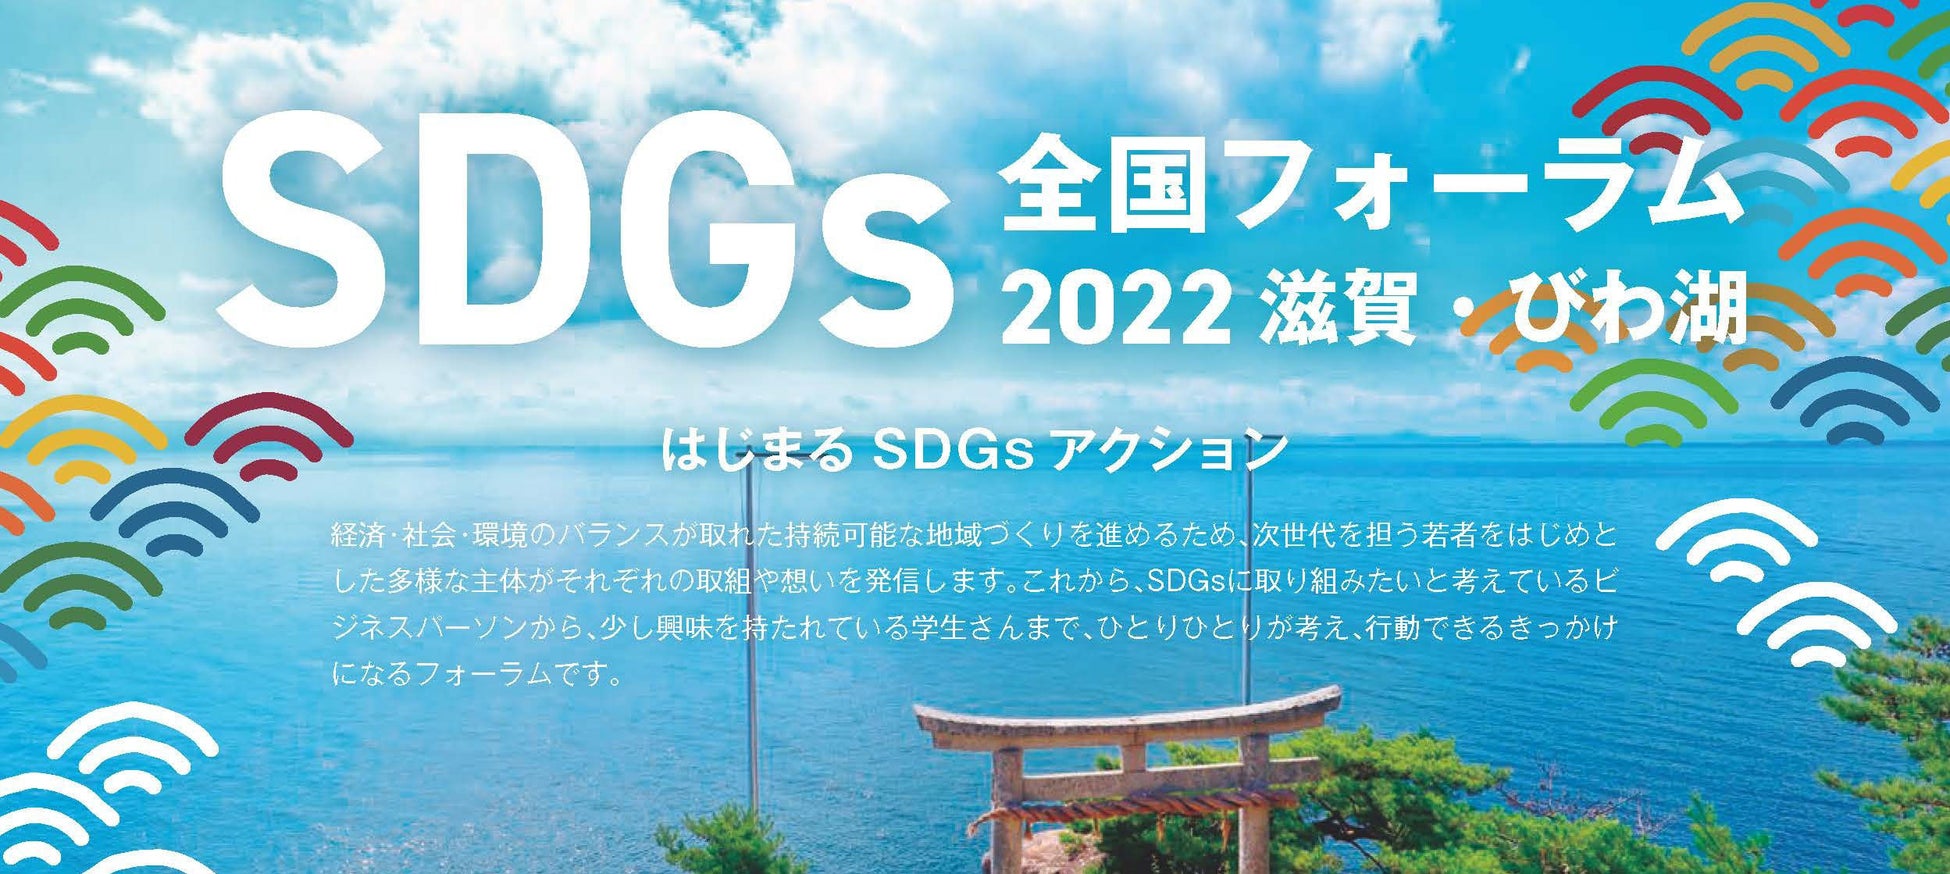 全国SDGsフォーラム2022滋賀・びわ湖に会長の上原仁が登壇のサブ画像1